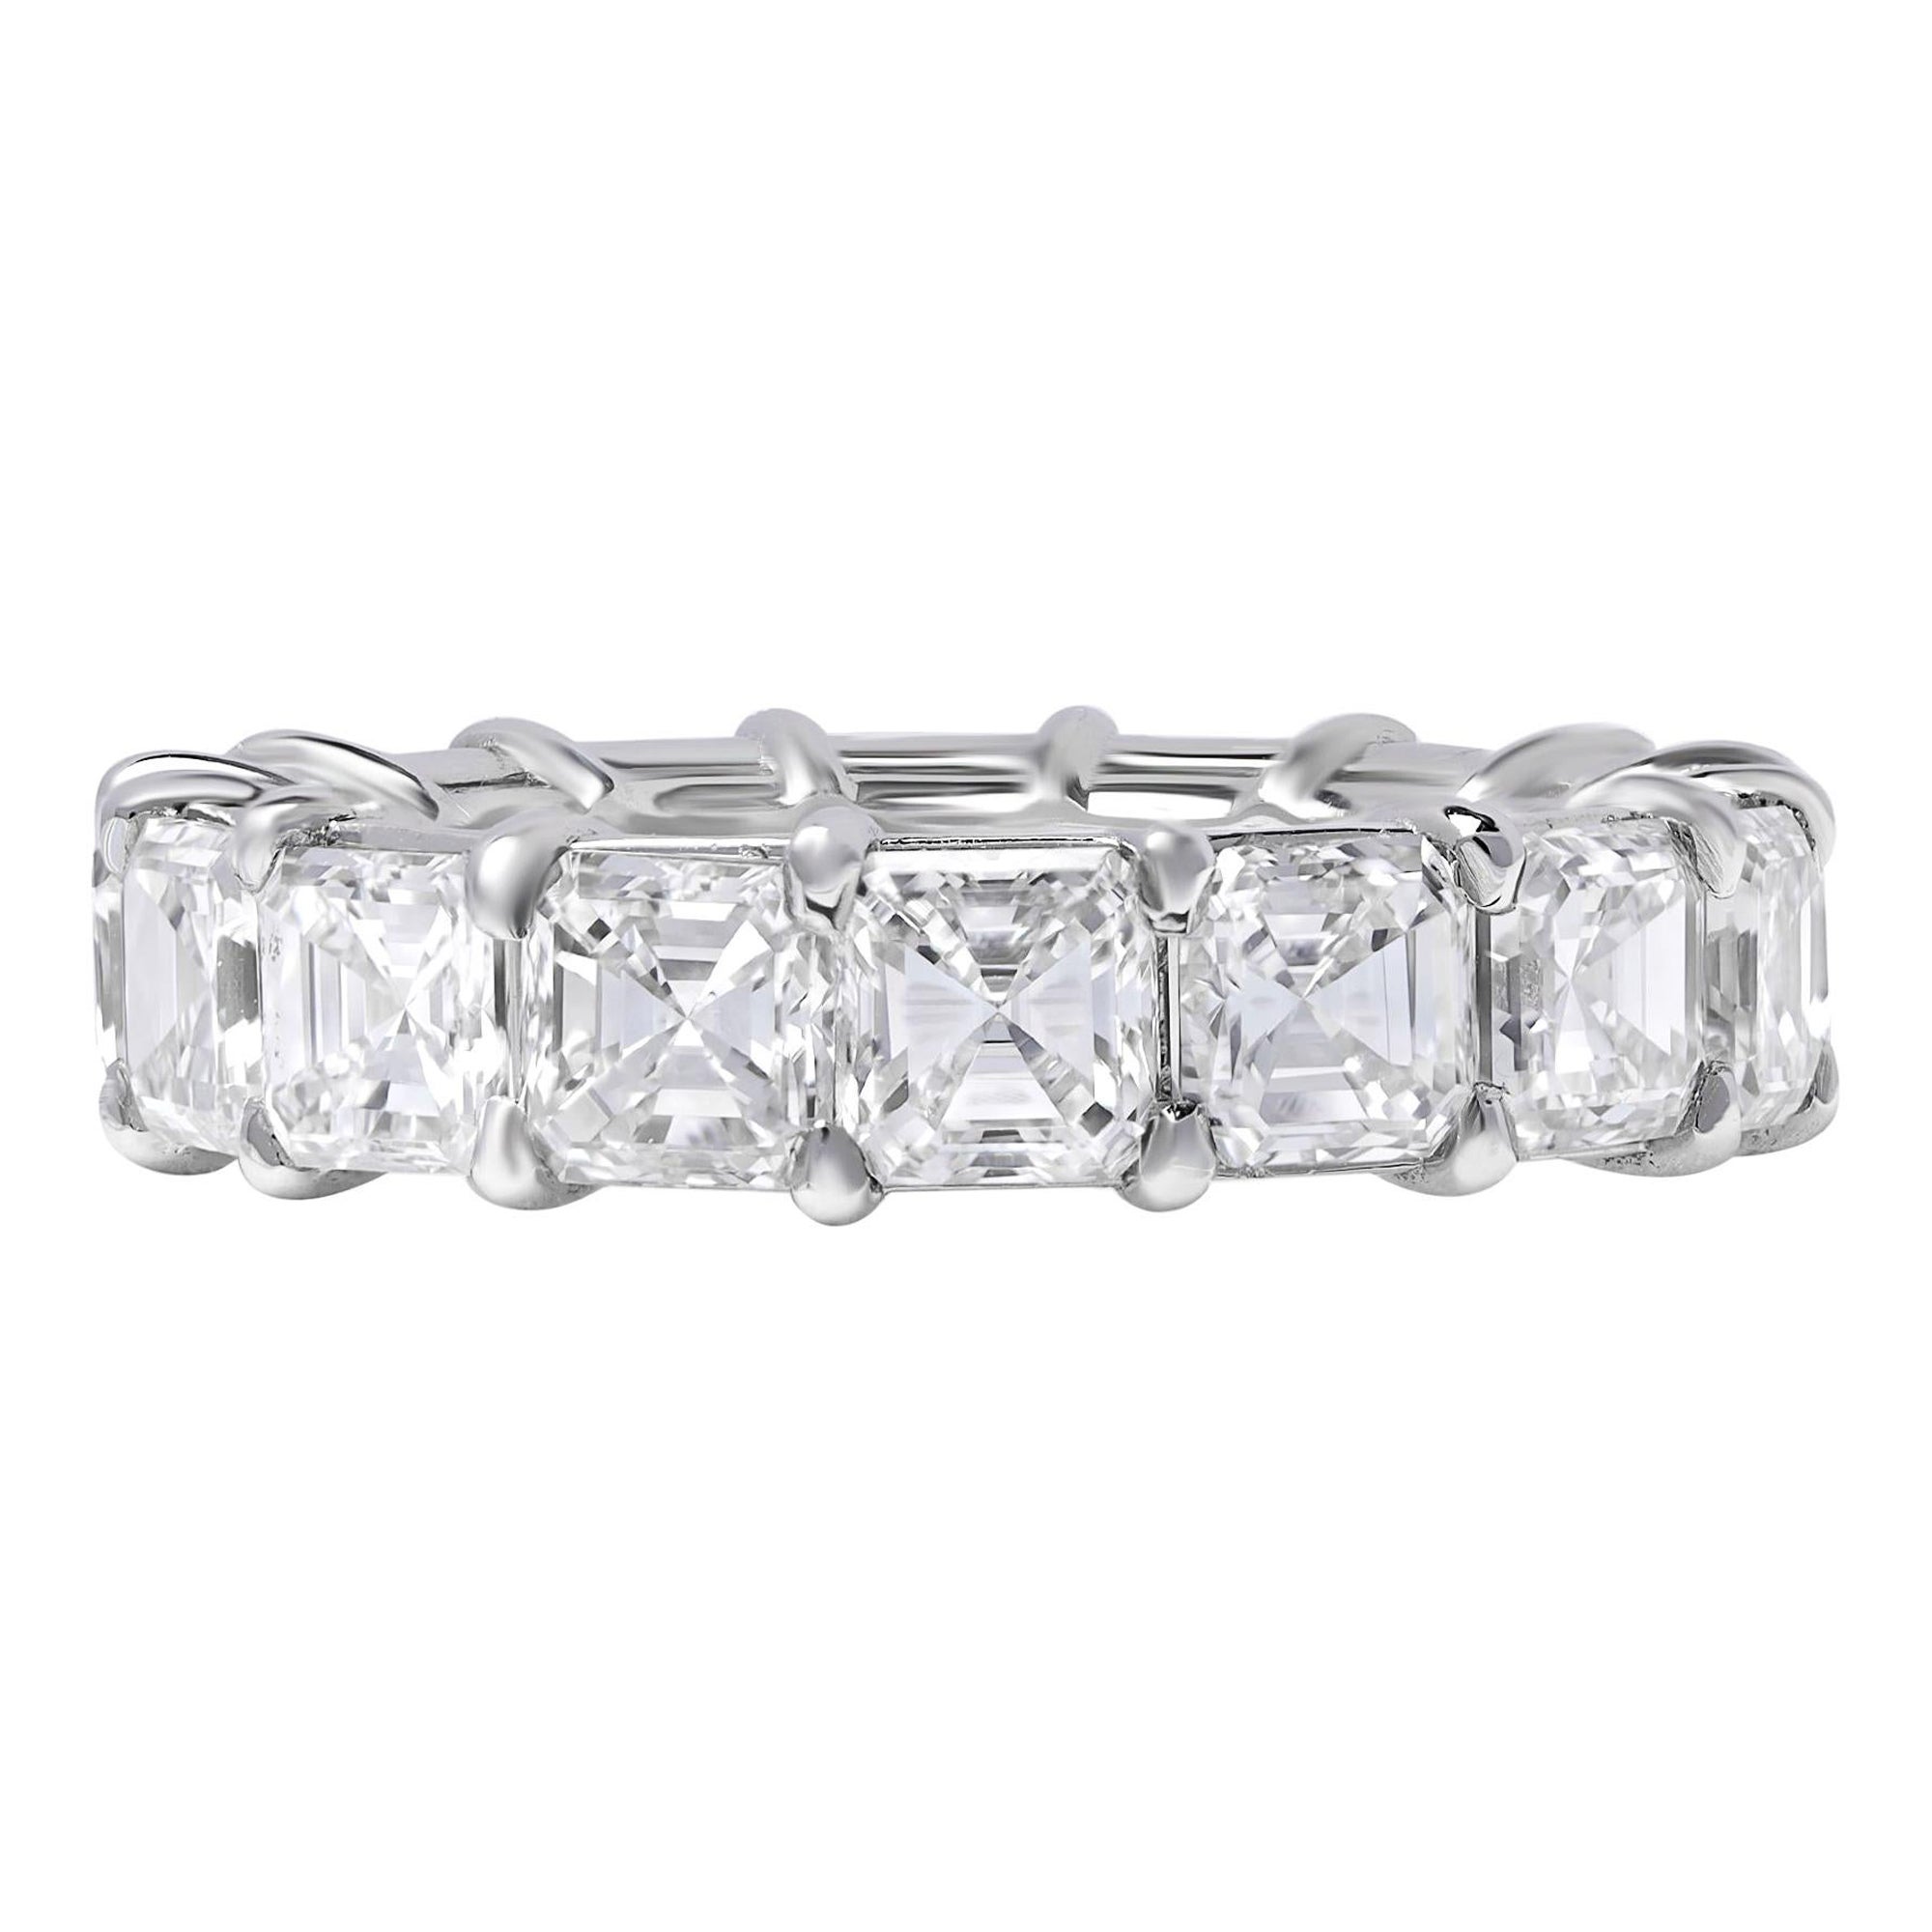 Asscher Cut Diamond Eternity Wedding Band Ring Platinum 8.13cttw